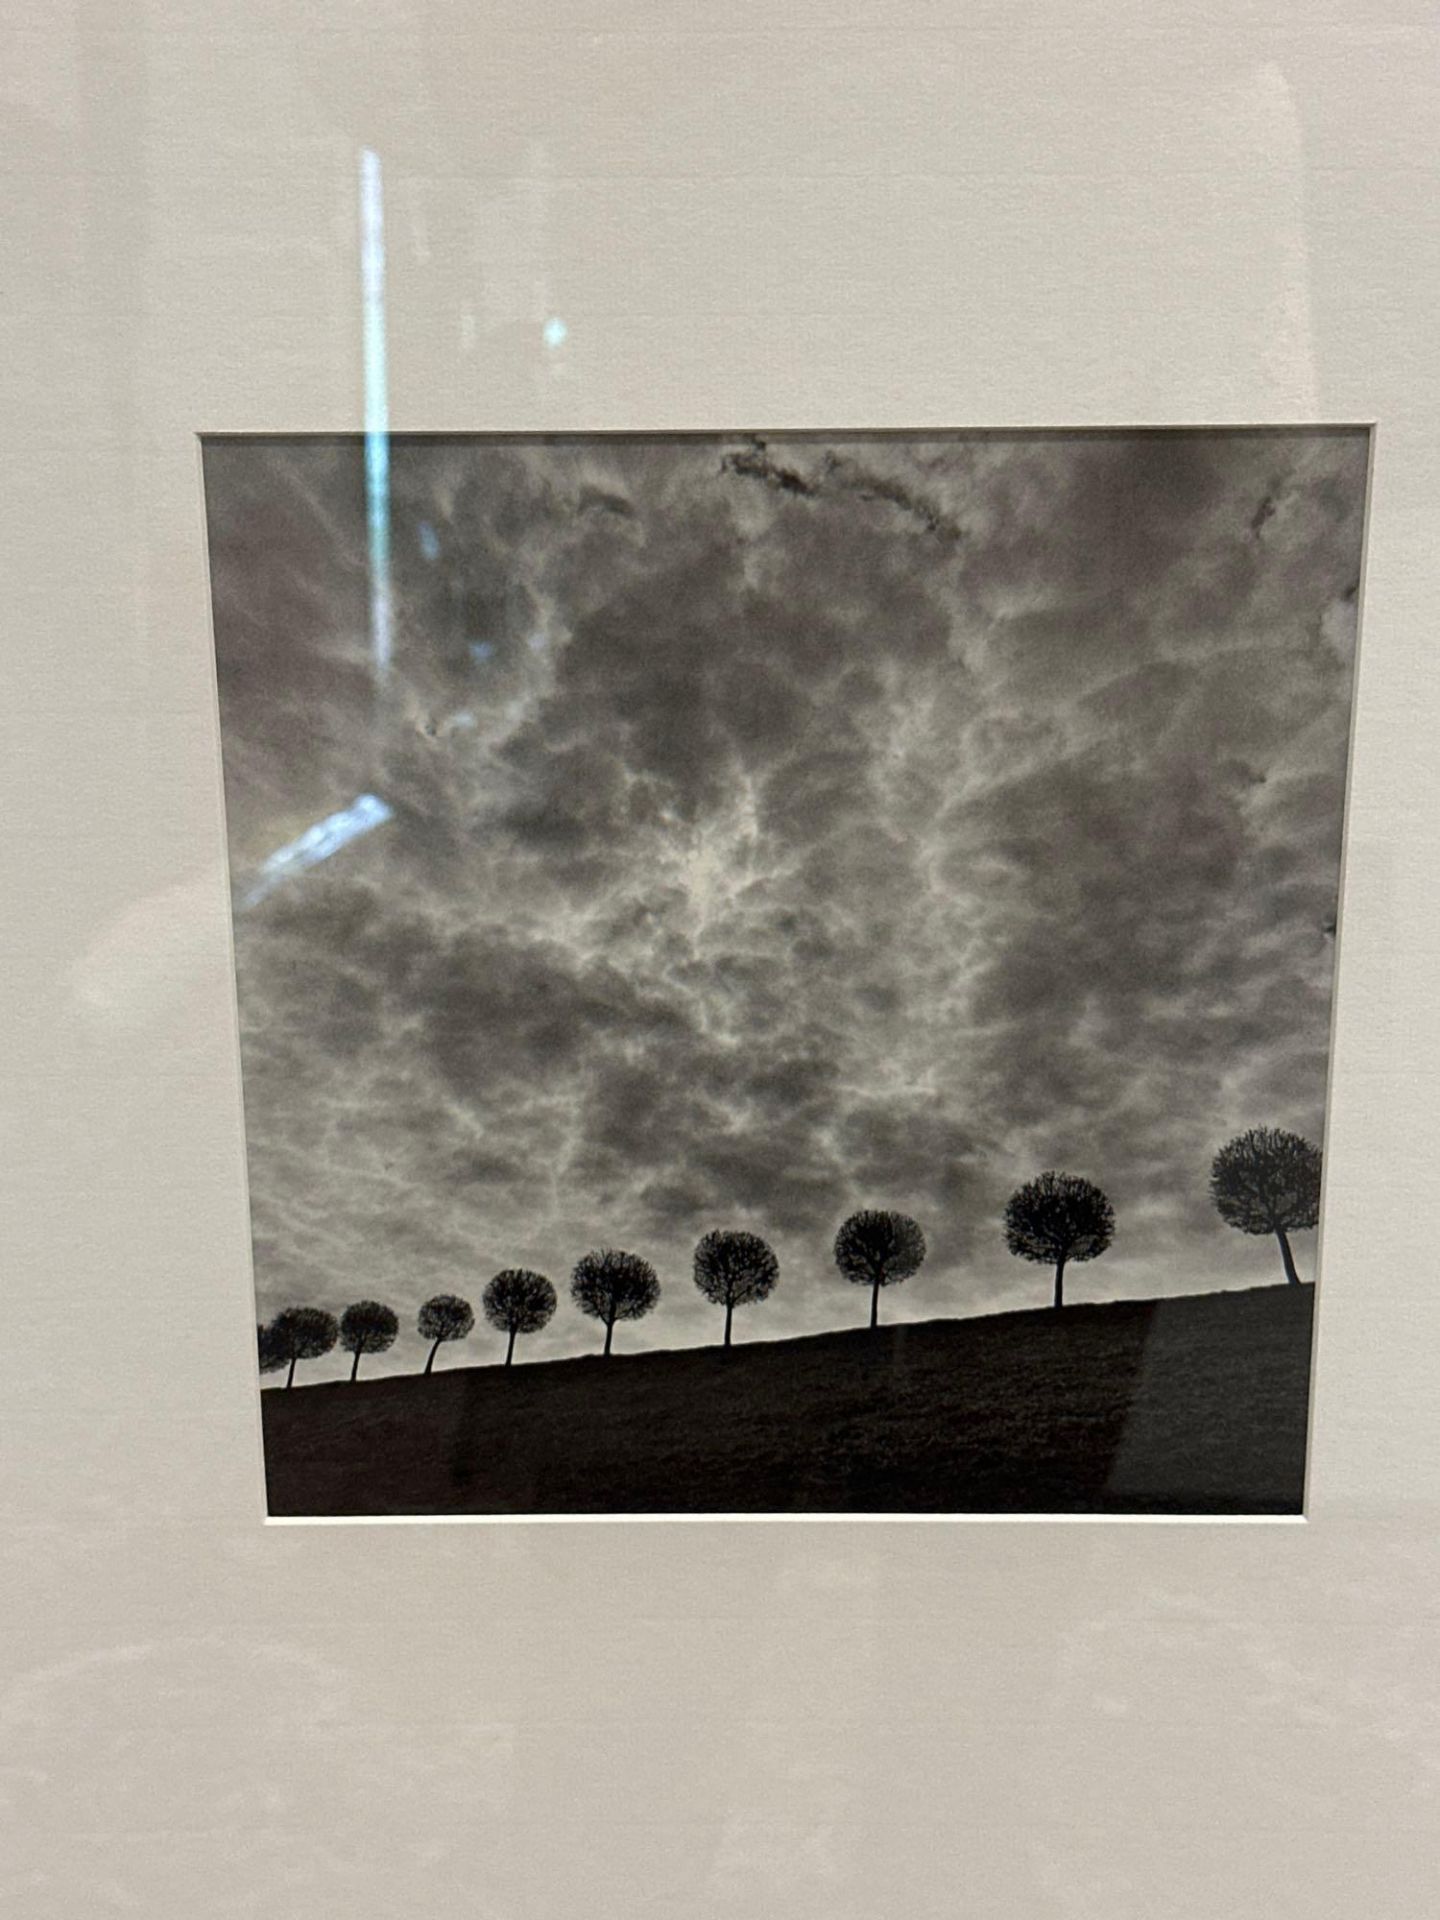 Framed Michael Kenna Landscape Monochrome Print Mounted In Glazed Black Oak Frame 64 x 86cm (CV37) - Image 2 of 2